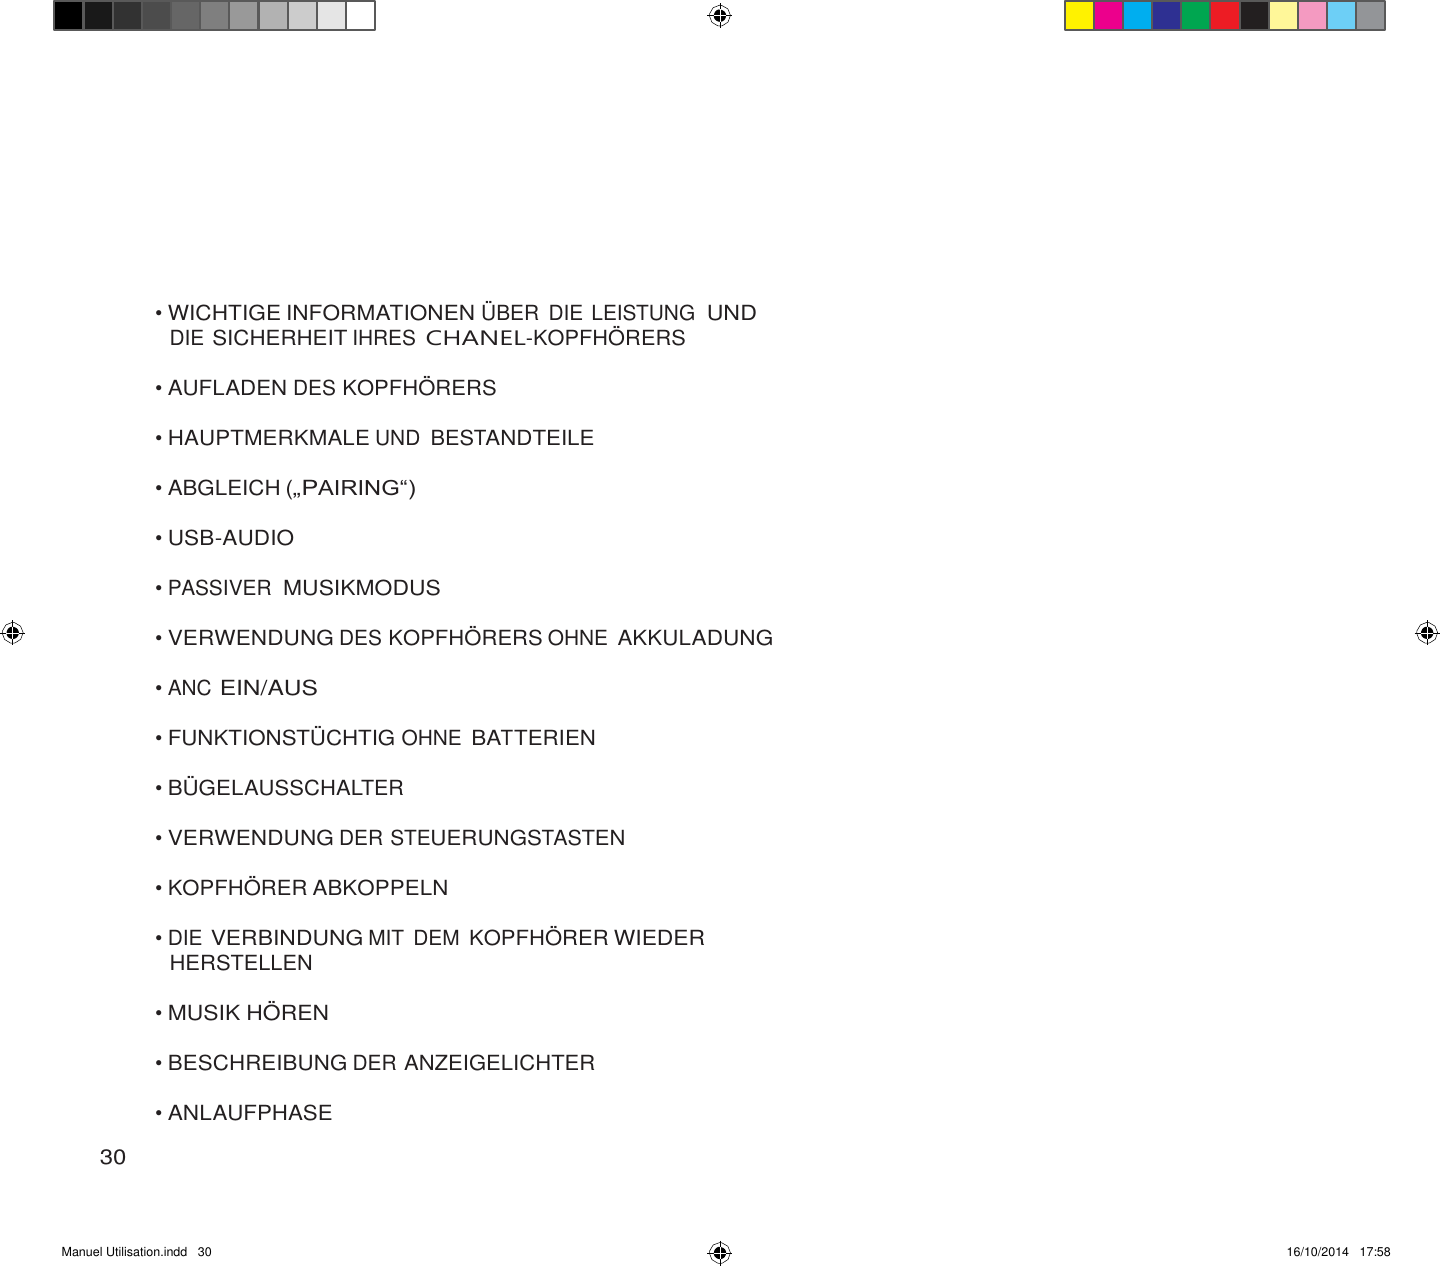 Manuel Utilisation.indd   30 16/10/2014   17:58               • WICHTIGE INFORMATIONEN Ü BER  DIE LEISTUNG  UND DIE SICHERHEIT IHRES CHANEL-KOPFHÖ RERS  • AUFLADEN DES KOPFHÖ RERS  • HAUPTMERKMALE UND BESTANDTEILE  • ABGLEICH („PAIRING“)  • USB-AUDIO  • PASSIVER MUSIKMODUS  • VERWENDUNG DES KOPFHÖ RERS OHNE AKKULADUNG  • ANC EIN/AUS  • FUNKTIONSTÜ CHTIG OHNE BATTERIEN  • BÜ GELAUSSCHALTER  • VERWENDUNG DER STEUERUNGSTASTEN  • KOPFHÖ RER ABKOPPELN  • DIE VERBINDUNG MIT  DEM KOPFHÖ RER WIEDER HERSTELLEN  • MUSIK HÖ REN  • BESCHREIBUNG DER ANZEIGELICHTER  • ANLAUFPHASE  30 